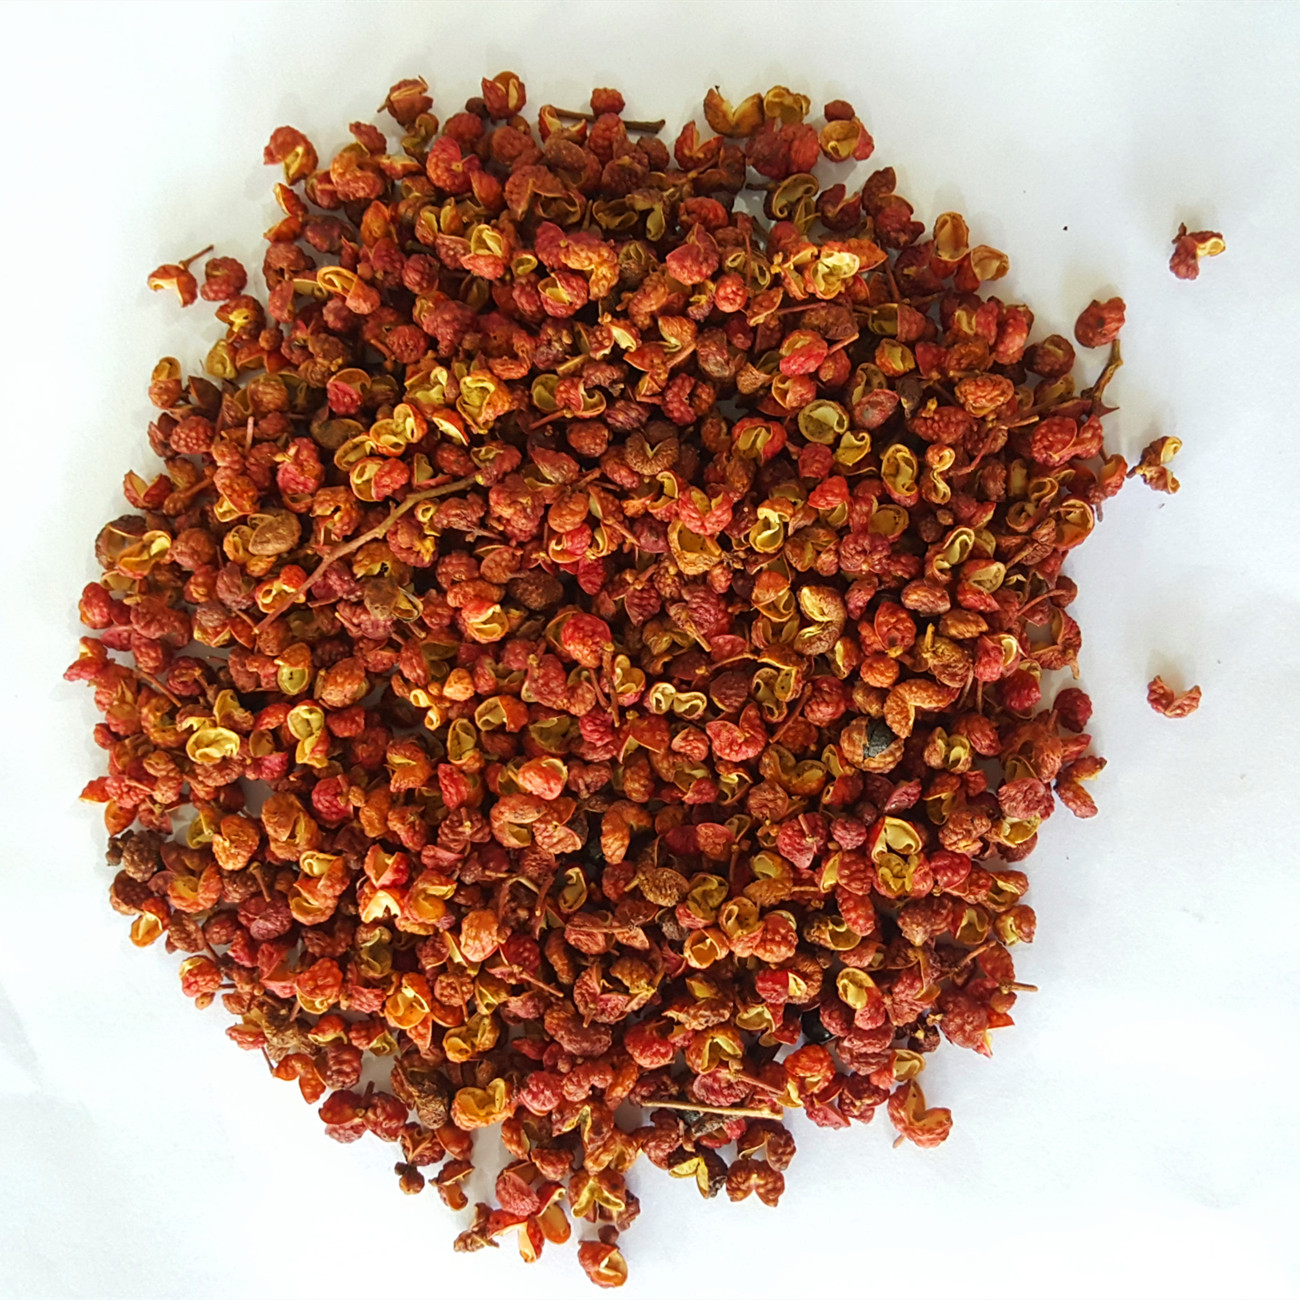 Sichuan peppercorns